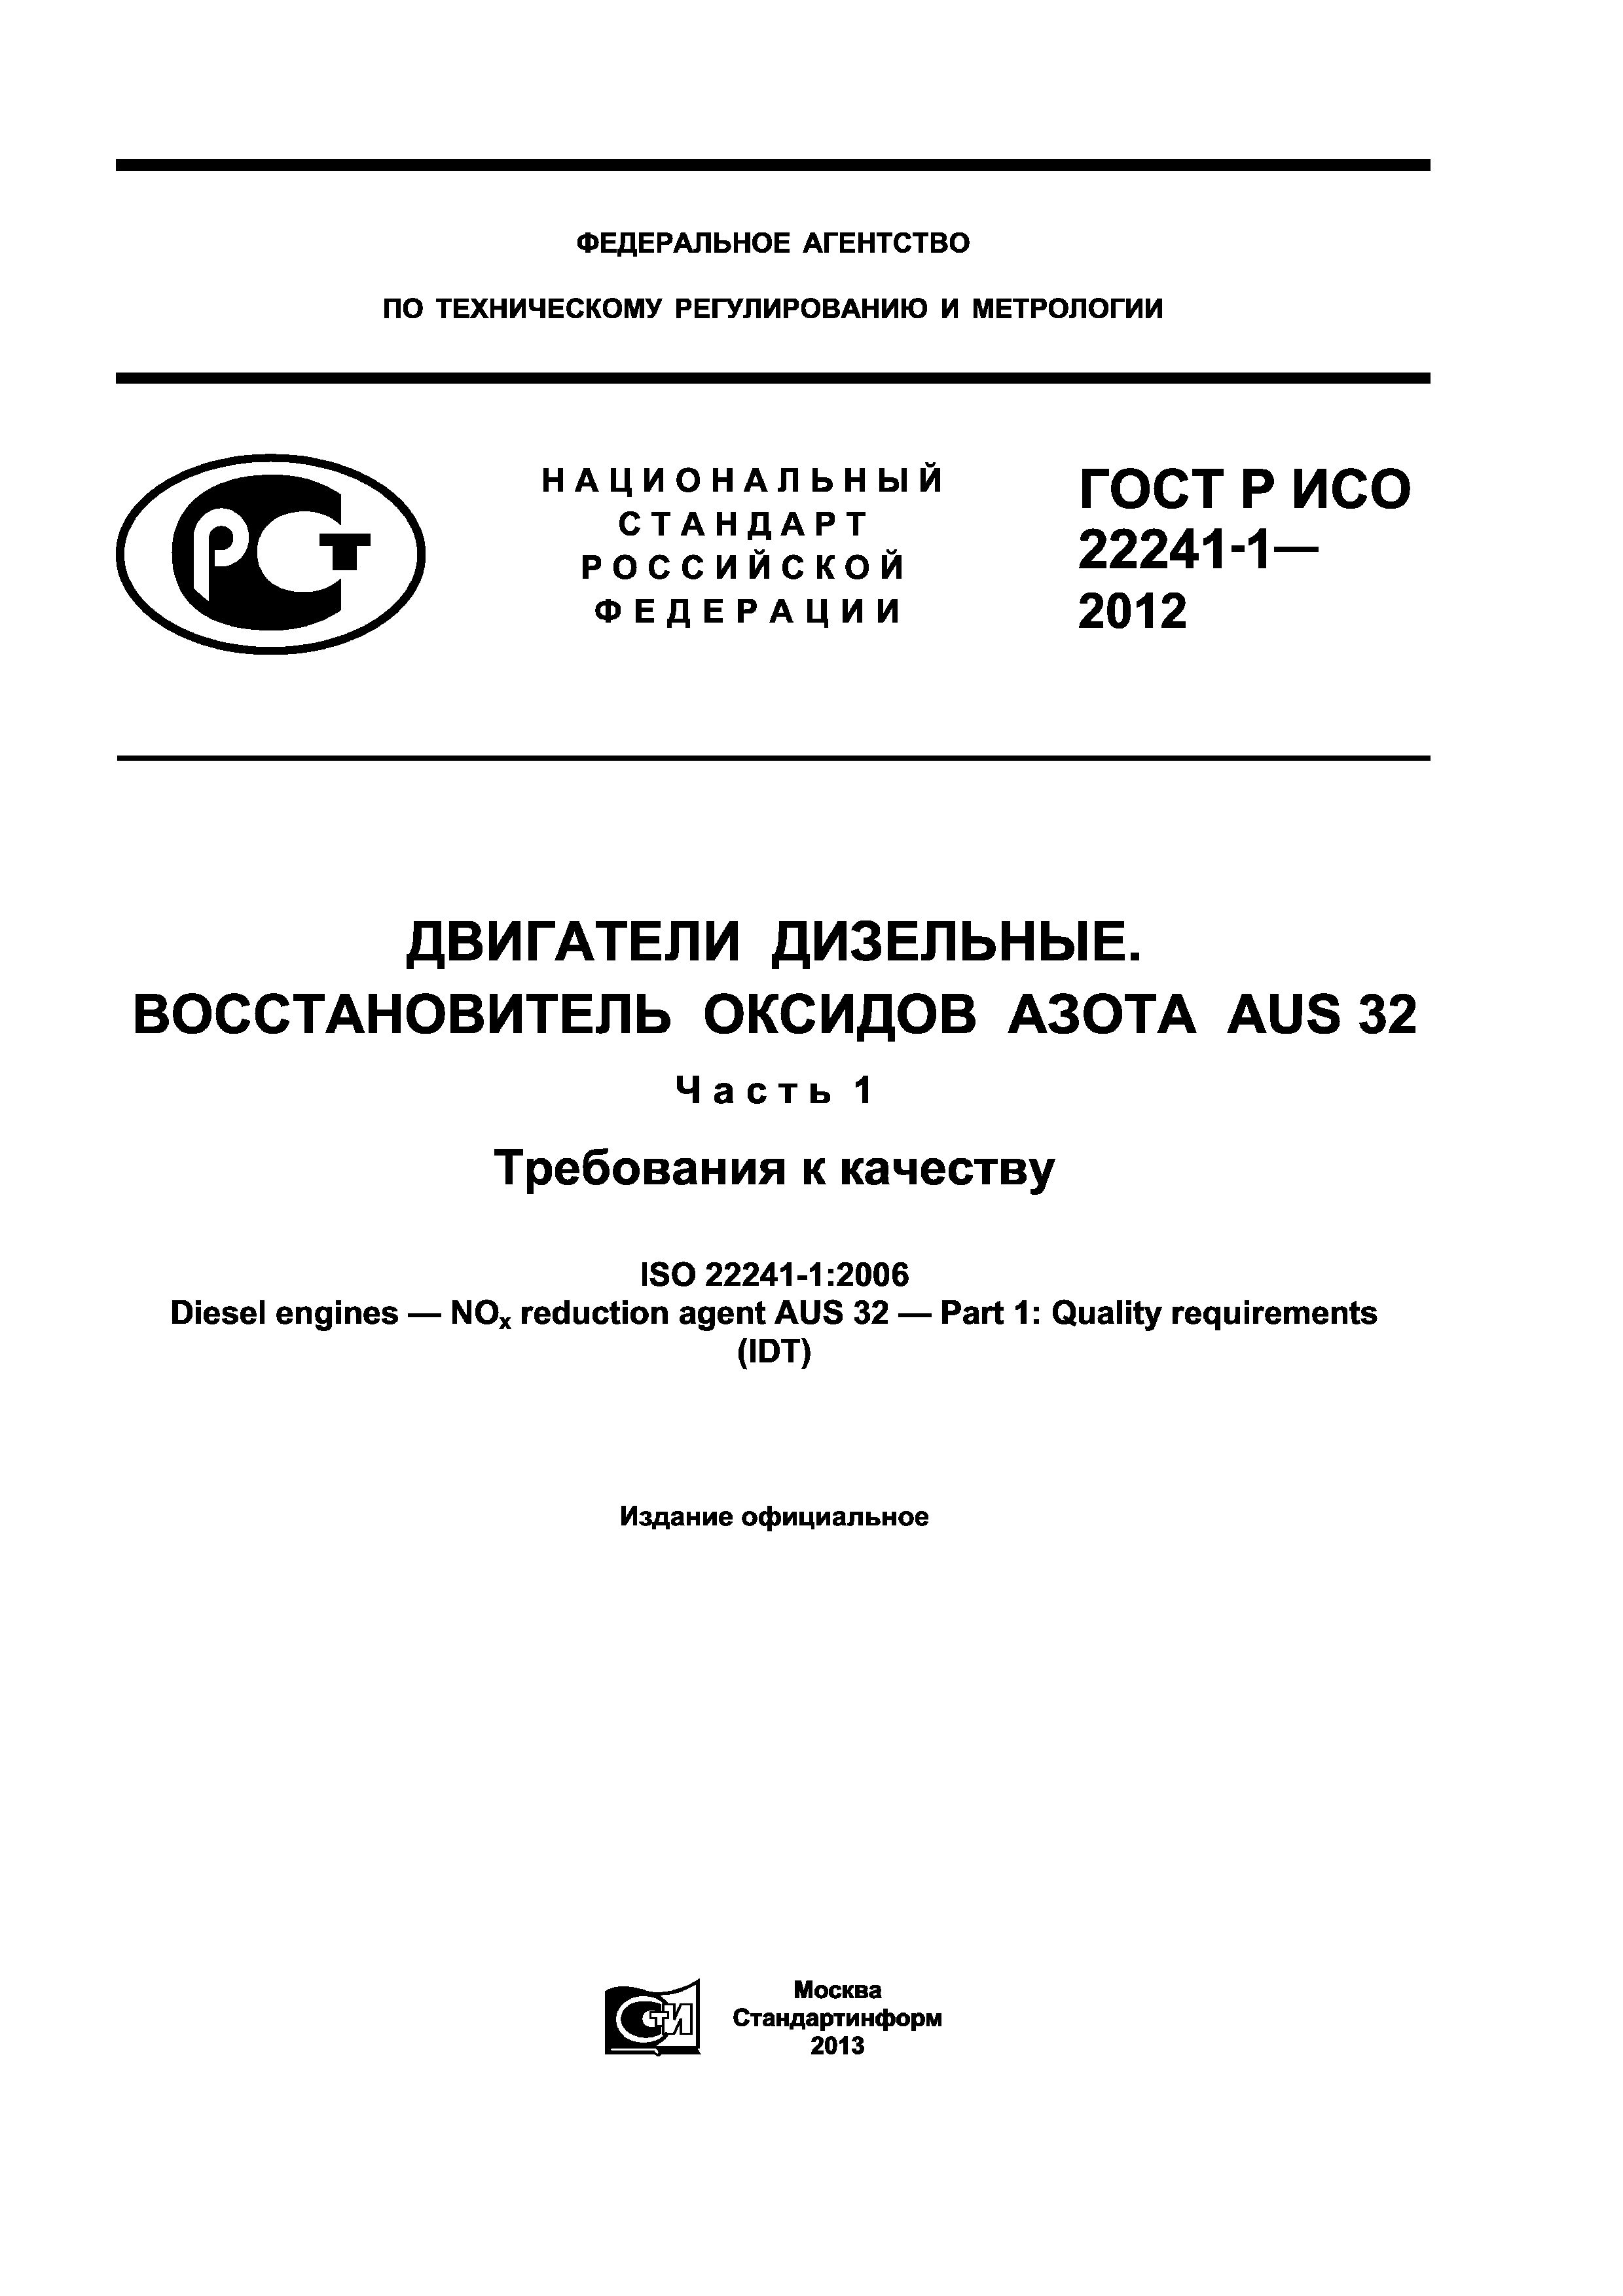 ГОСТ Р ИСО 22241-1-2012